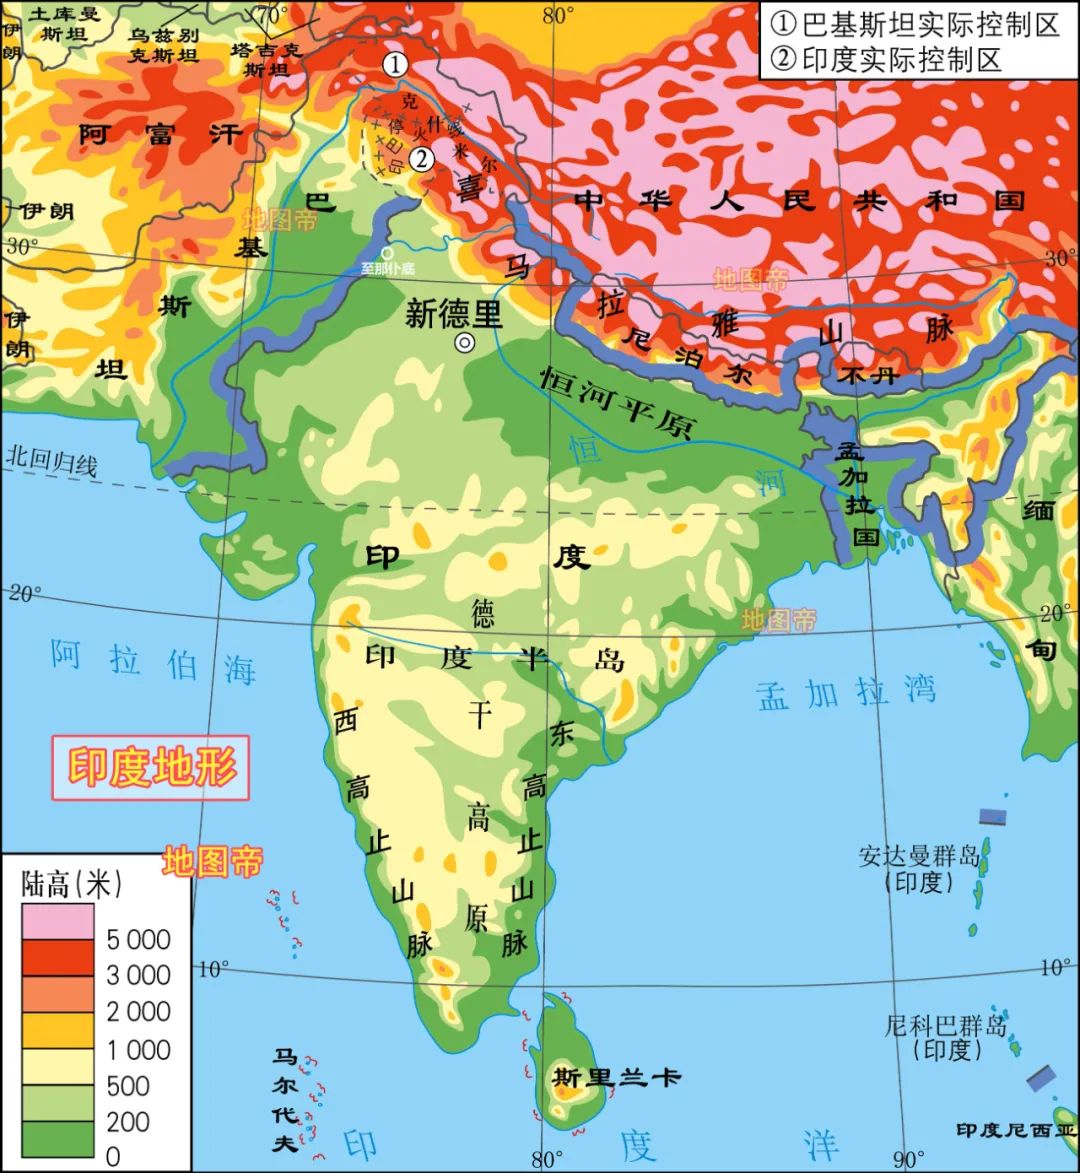 《西游记》的凤仙郡在印度，为何说是中原国家？